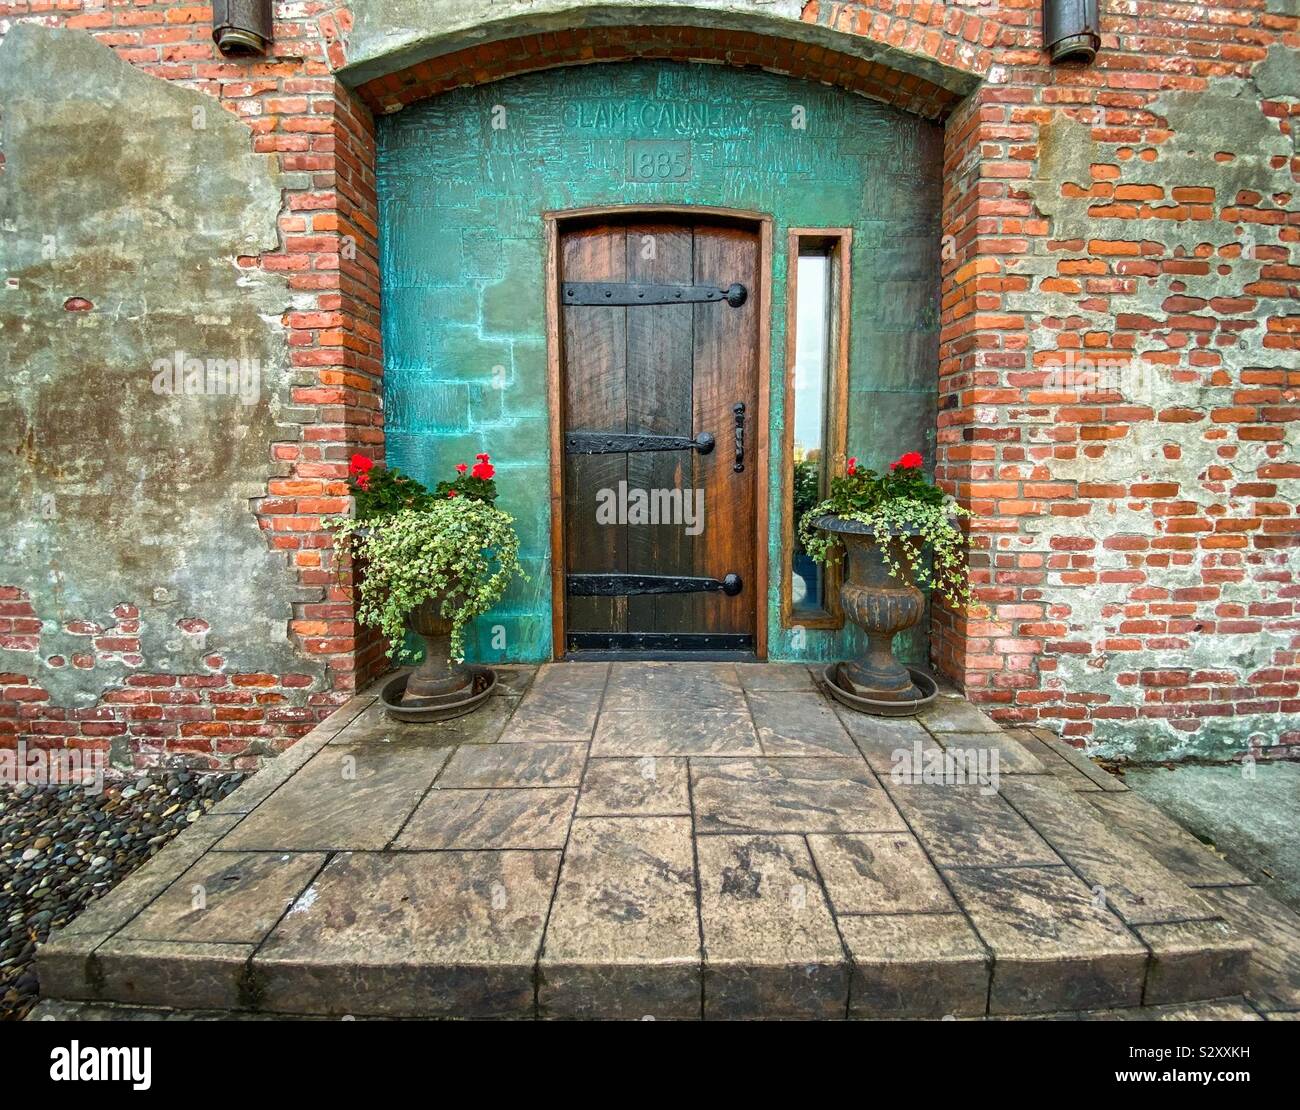 Porta della storica Clam Cannery in Port Townsend, nello Stato di Washington, USA Foto Stock